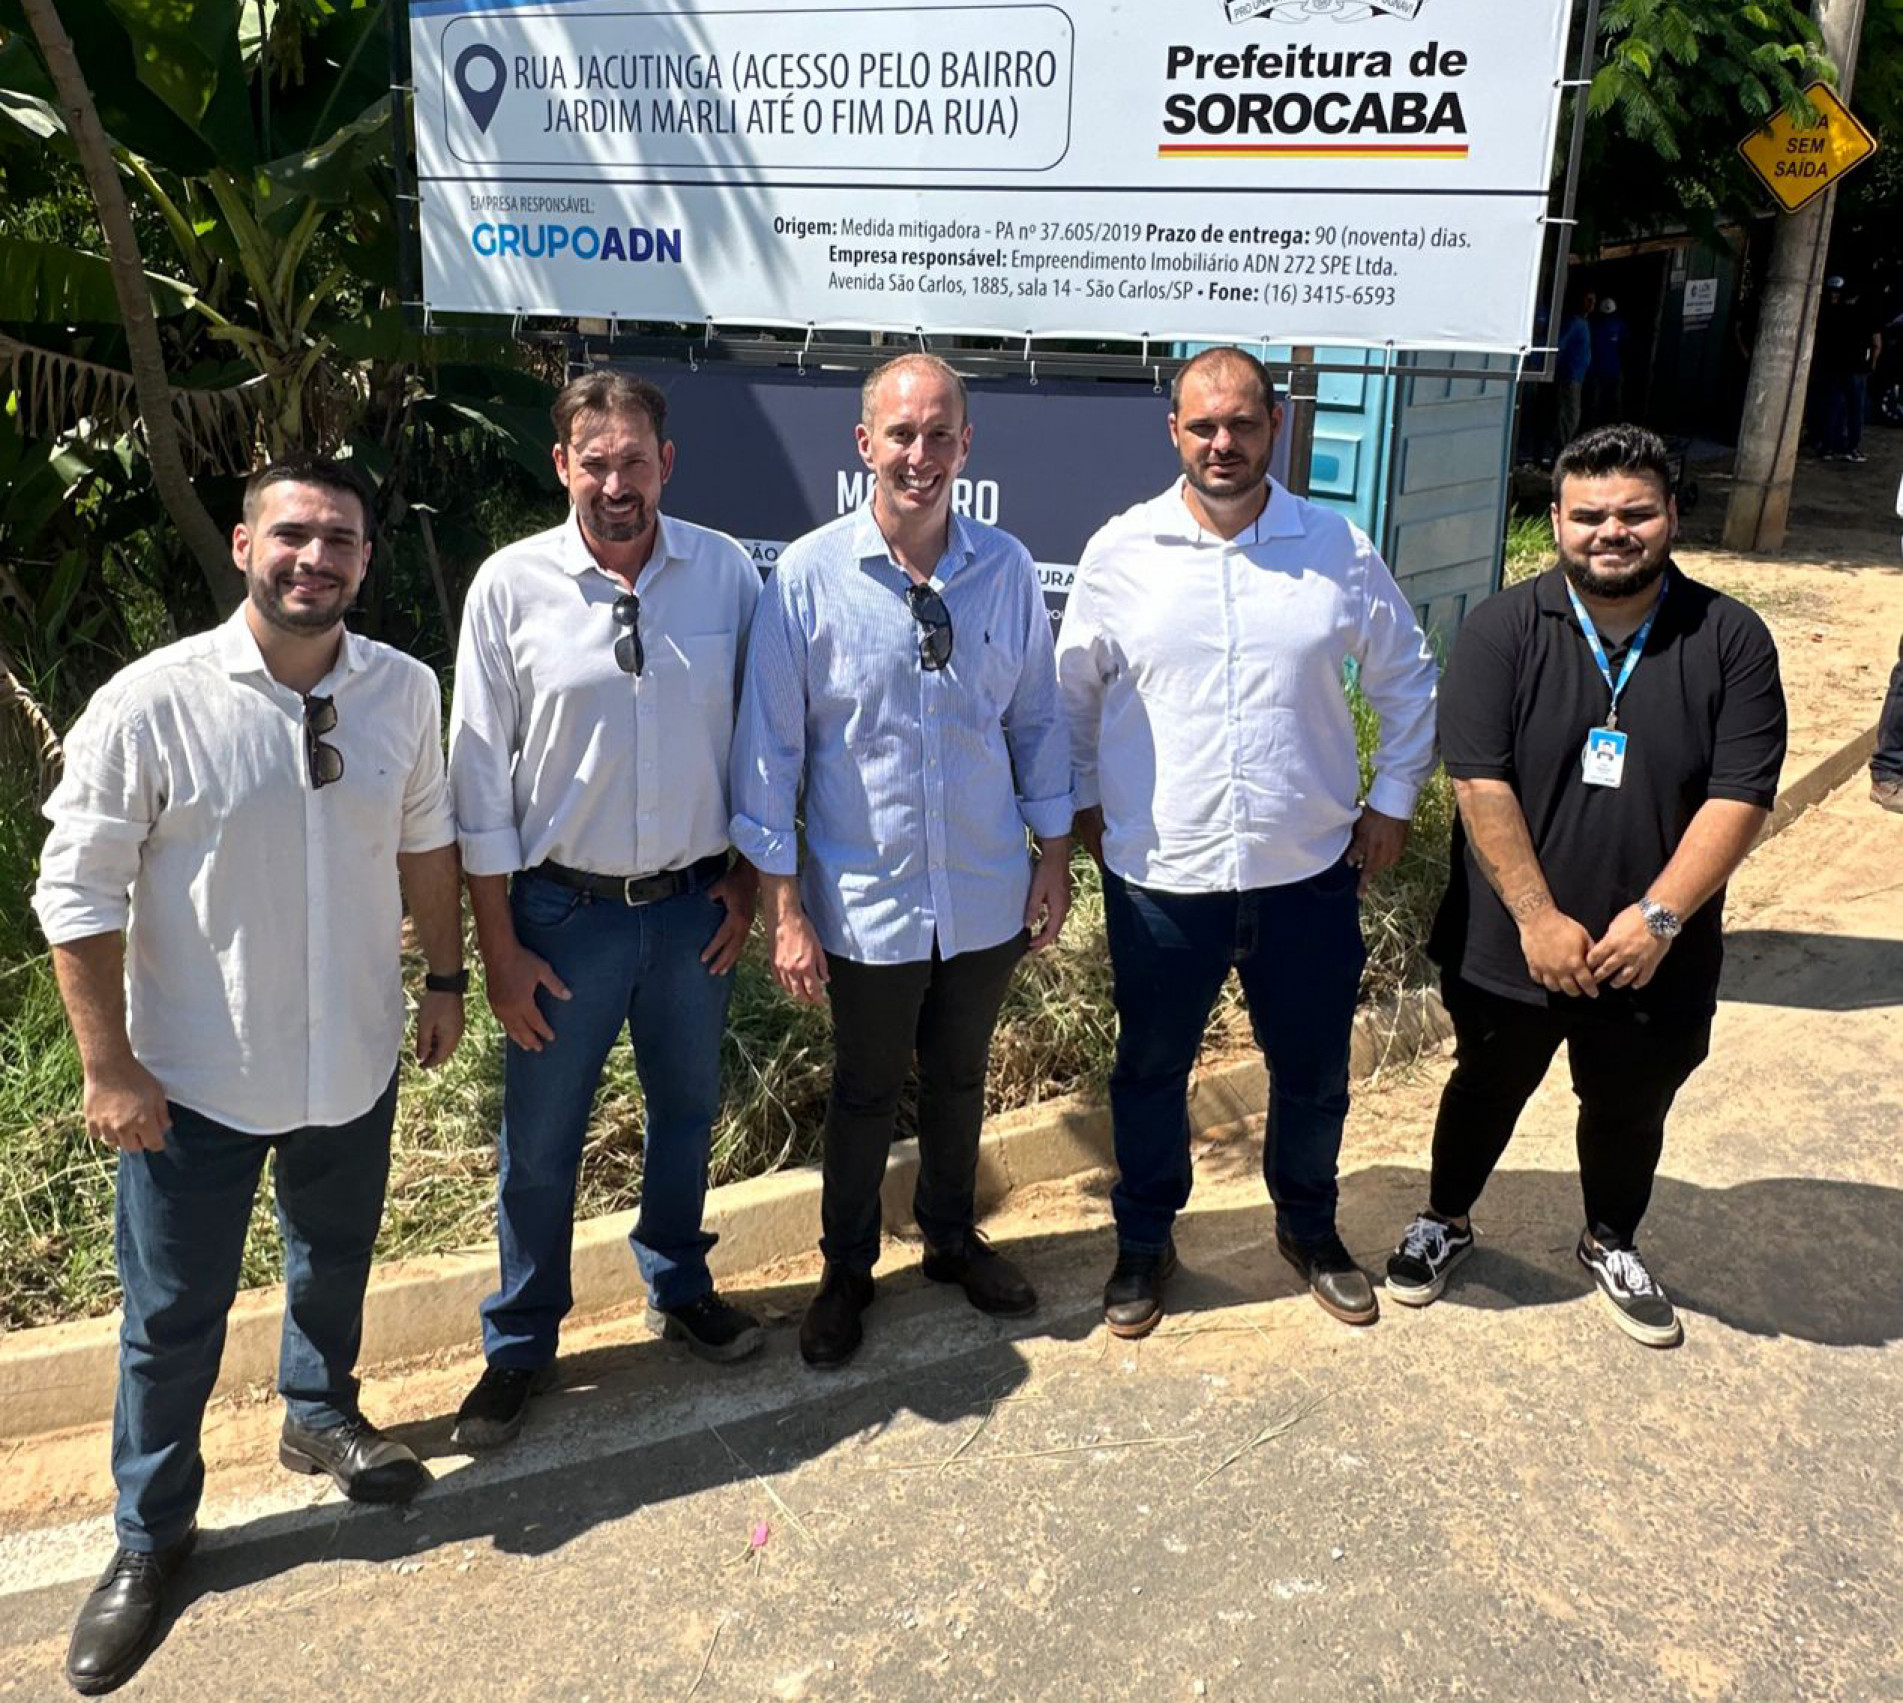 Prefeito Rodrigo Manga e representantes do Grupo ADN visitaram as obras em fase inicial de execução